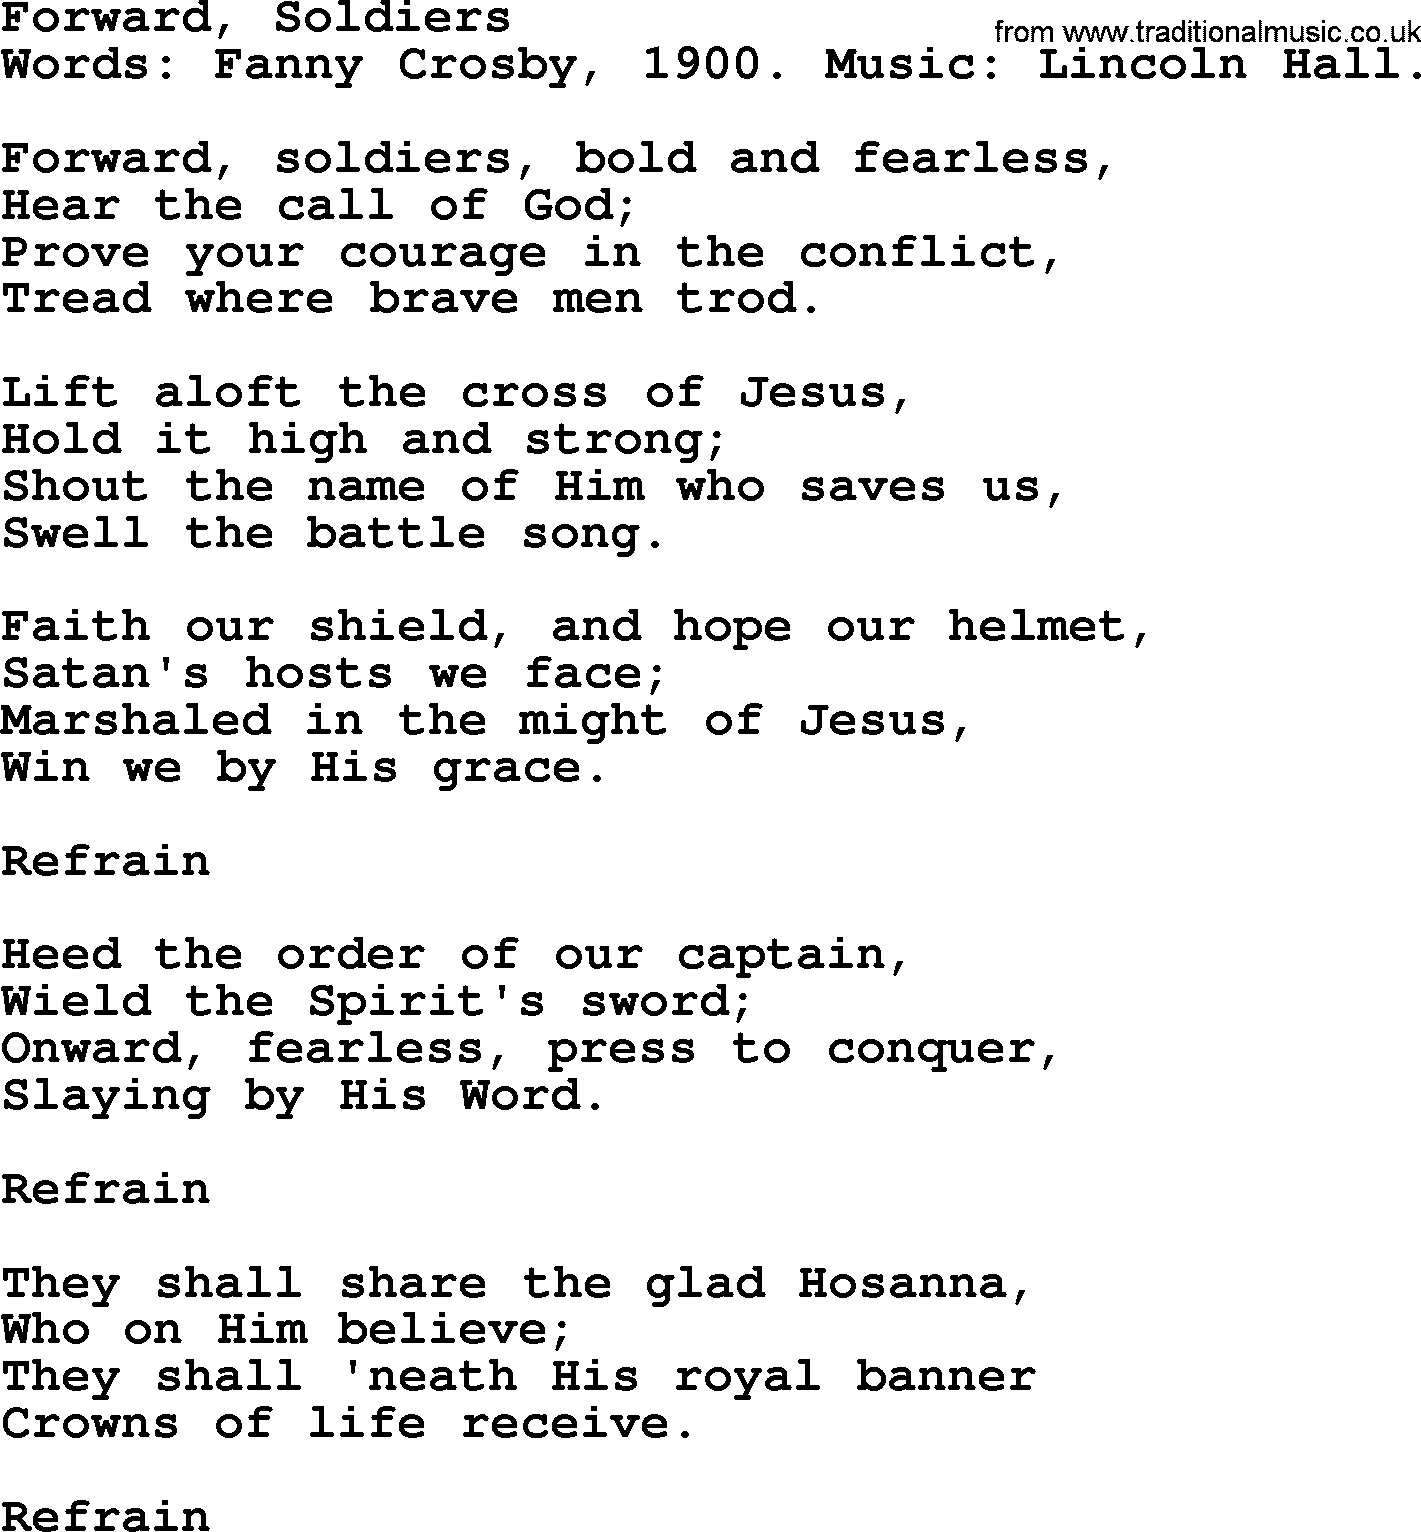 Fanny Crosby song: Forward, Soldiers, lyrics